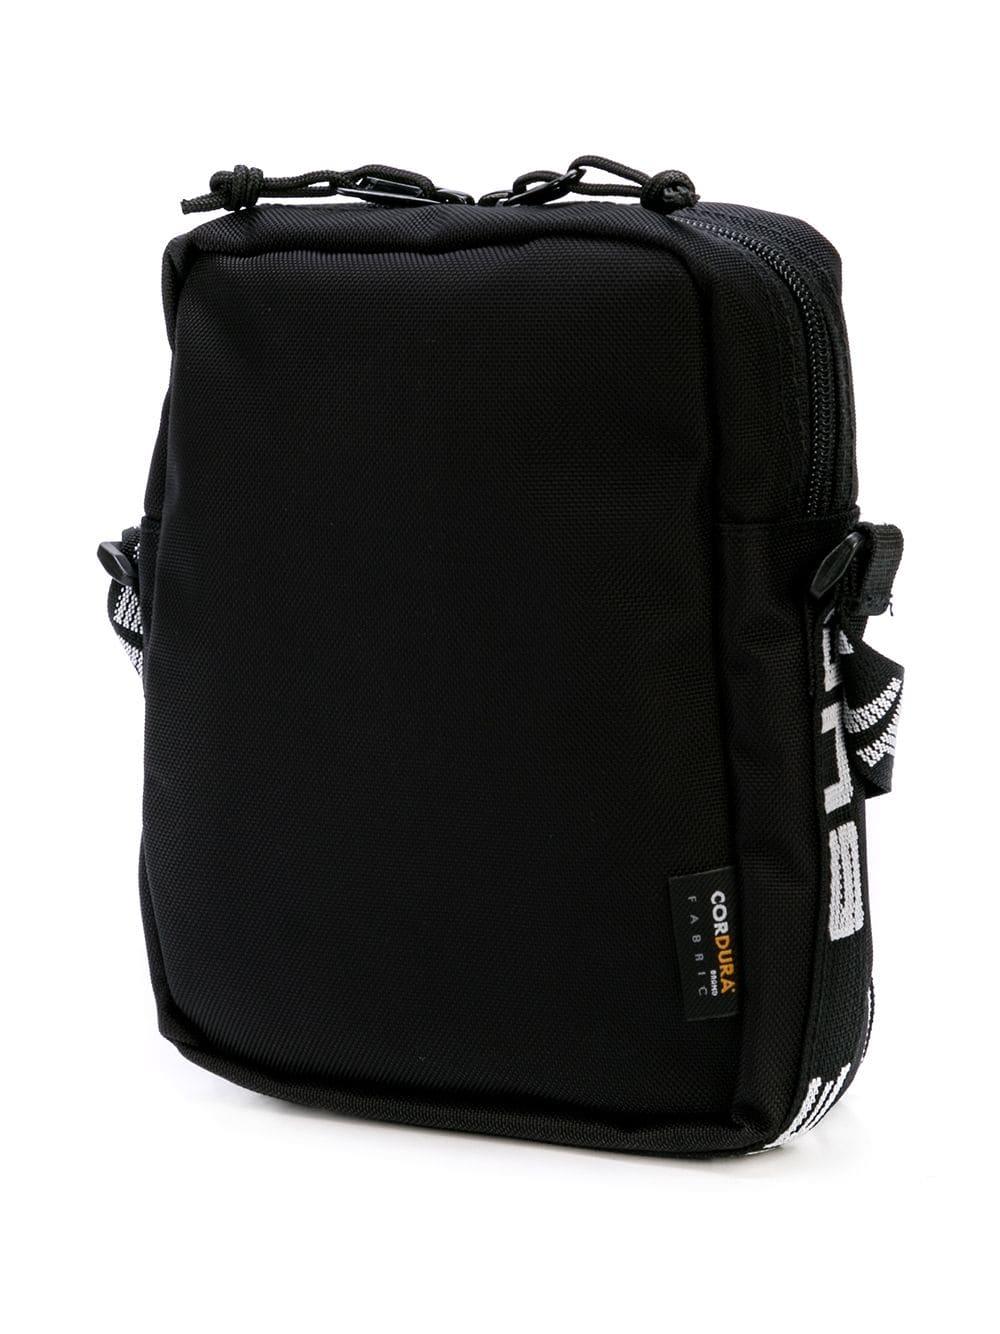 Supreme Shoulder Bag Black  Bags, Shoulder bag, Leather